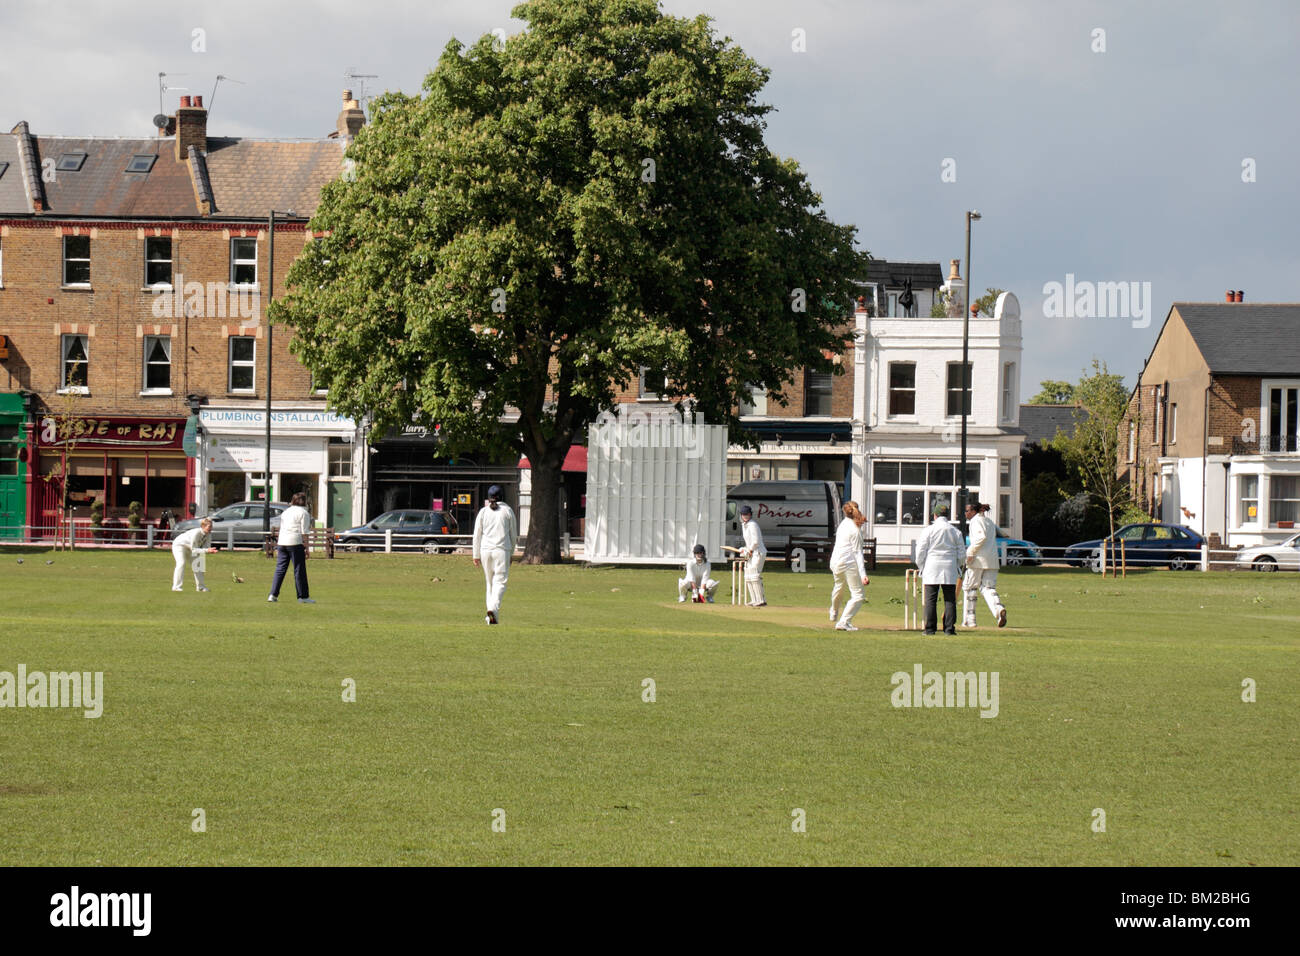 Las mujeres cricketers jugando en Twickenham verde, Richmond Upon Thames, Reino Unido. Foto de stock